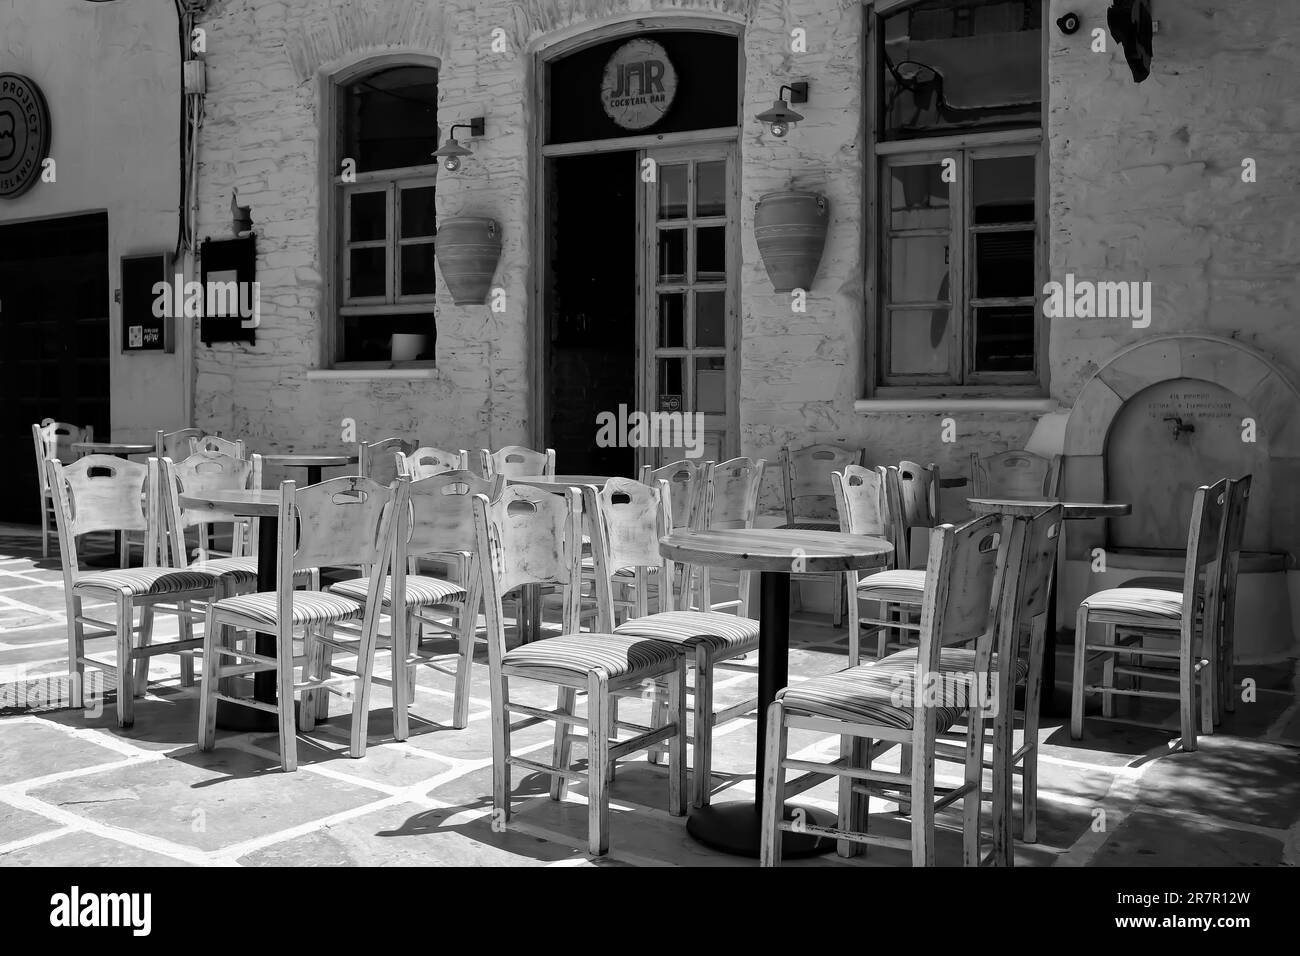 IOS, Grèce - 25 mai 2021 : vue sur la célèbre place entourée de bars sur l'île pittoresque d'iOS Grèce Banque D'Images